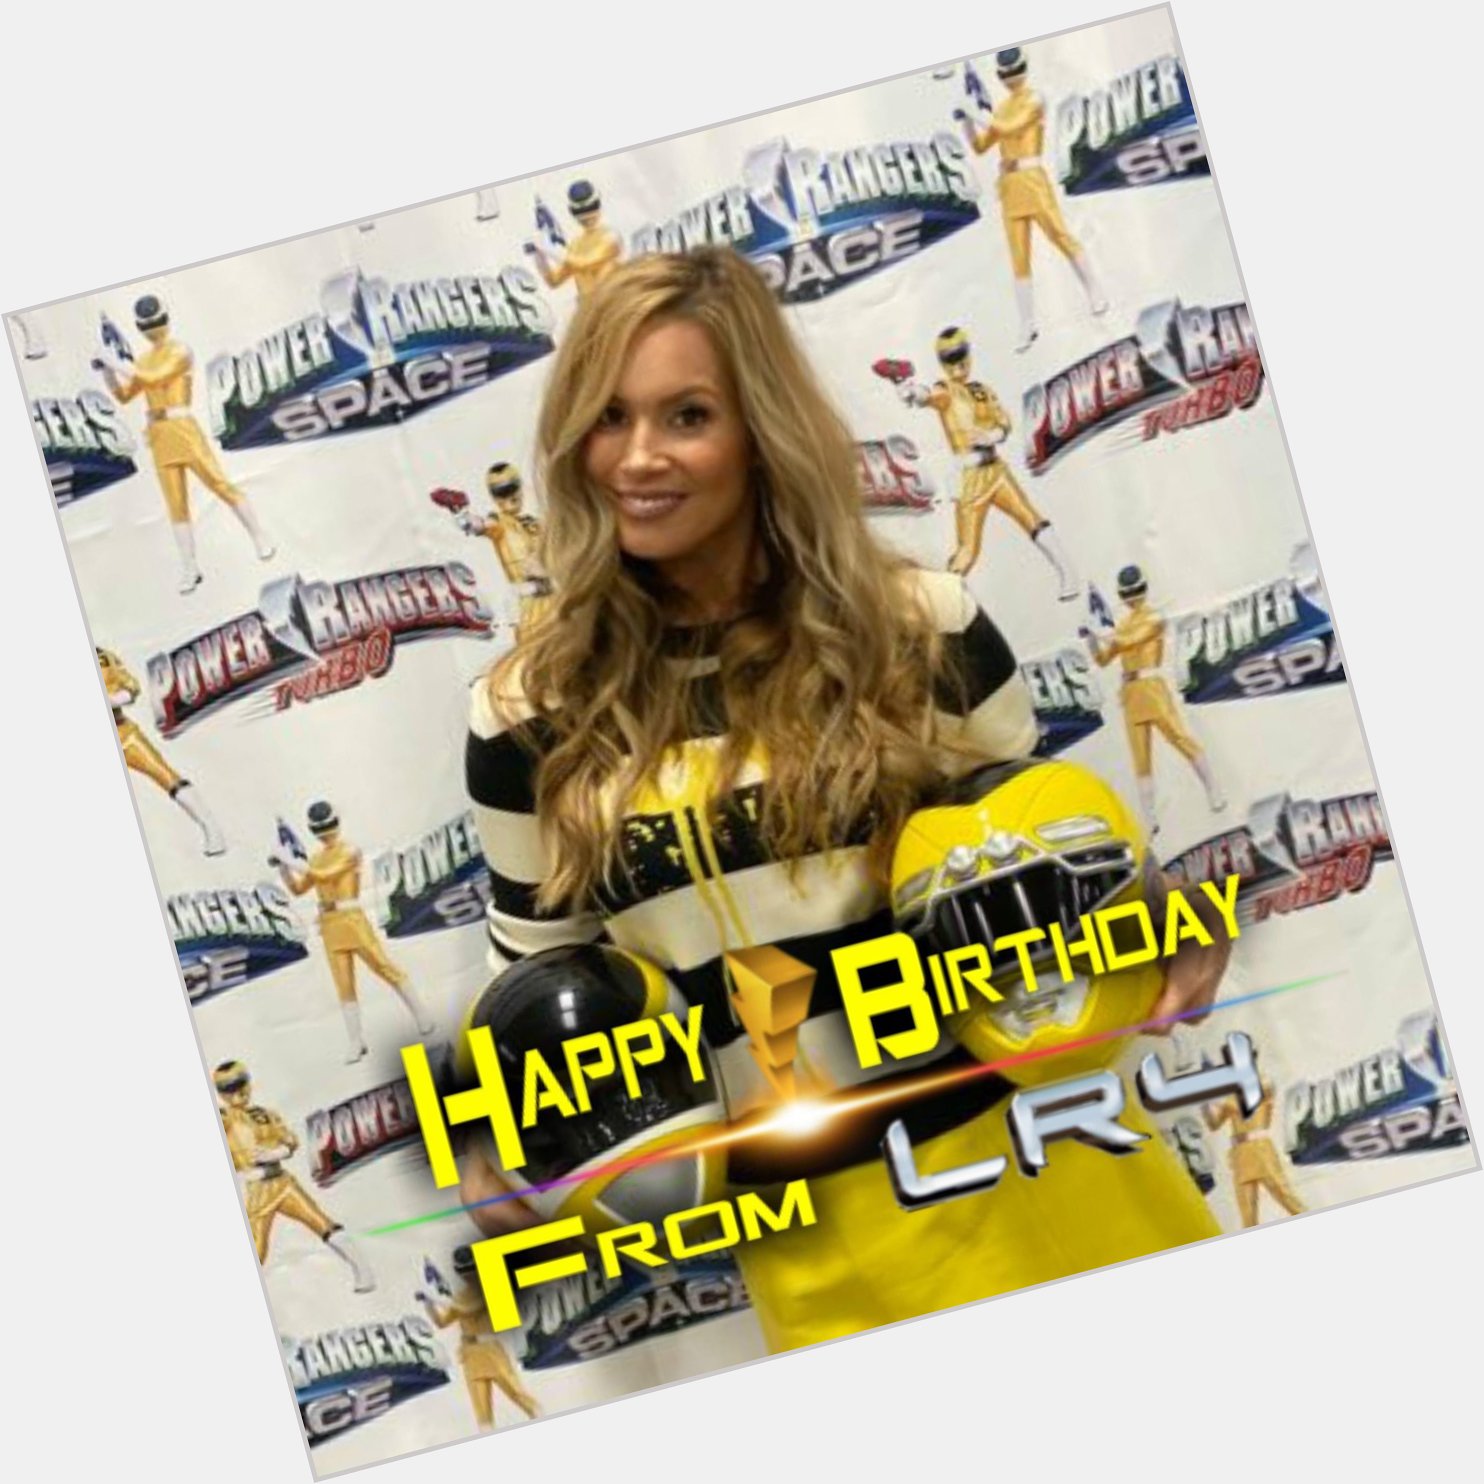 LR4 would like to wish Tracy Lynn Cruz a Happy Birthday! 